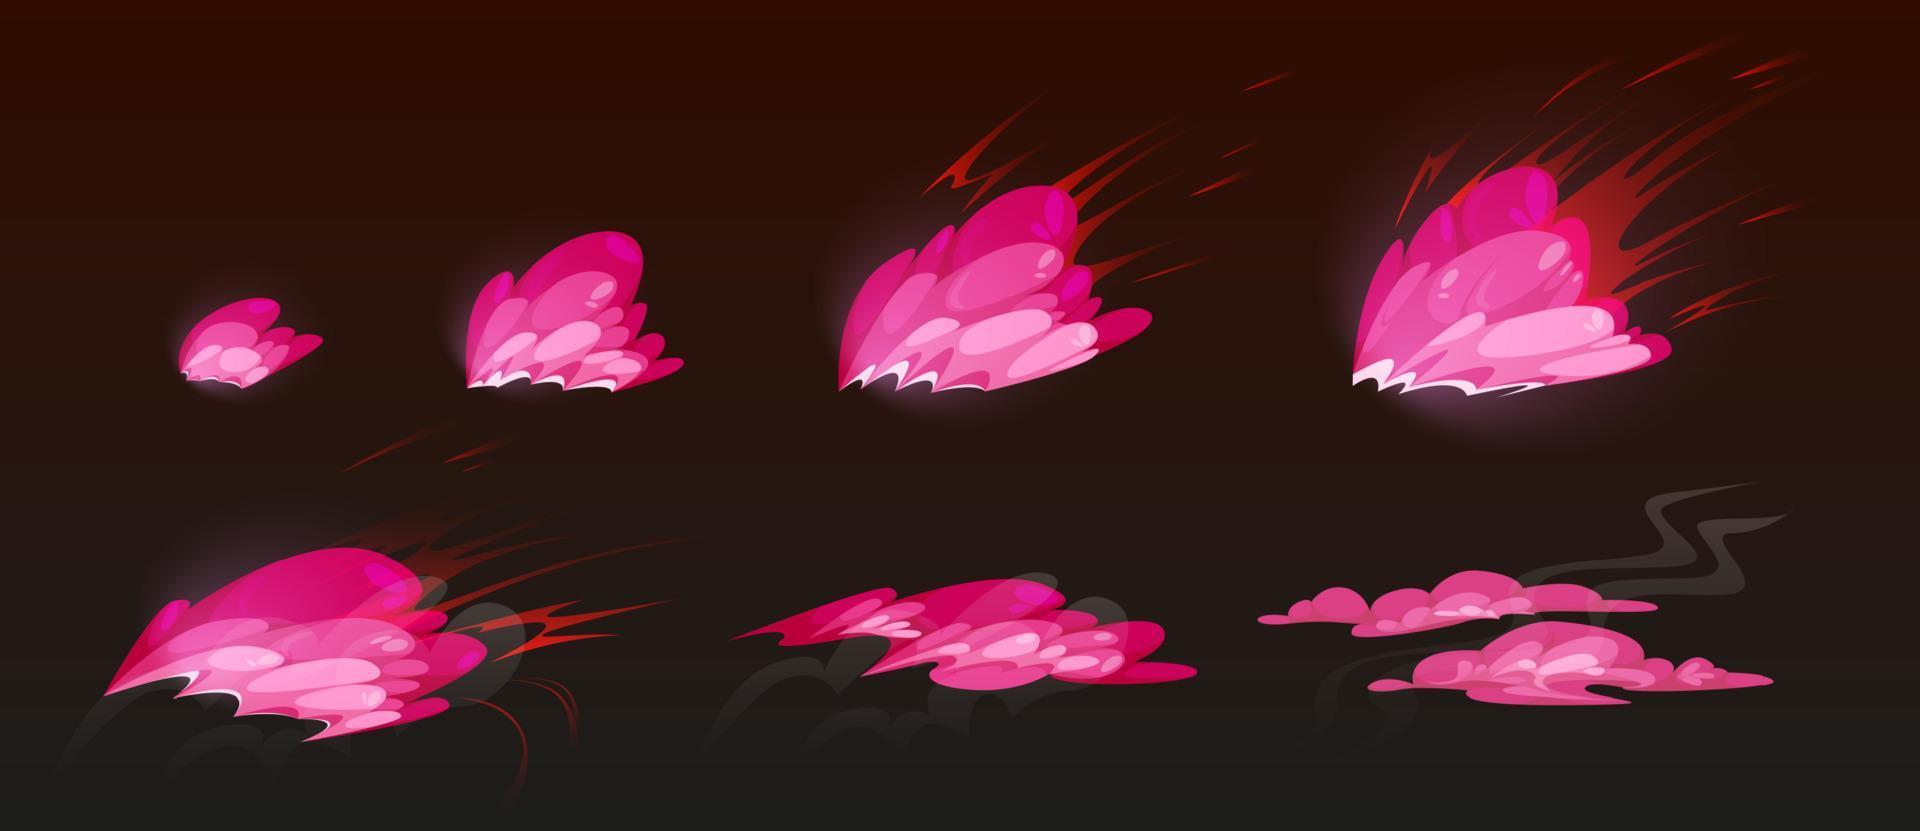 sprites de explosión rosa para juegos o animación vector